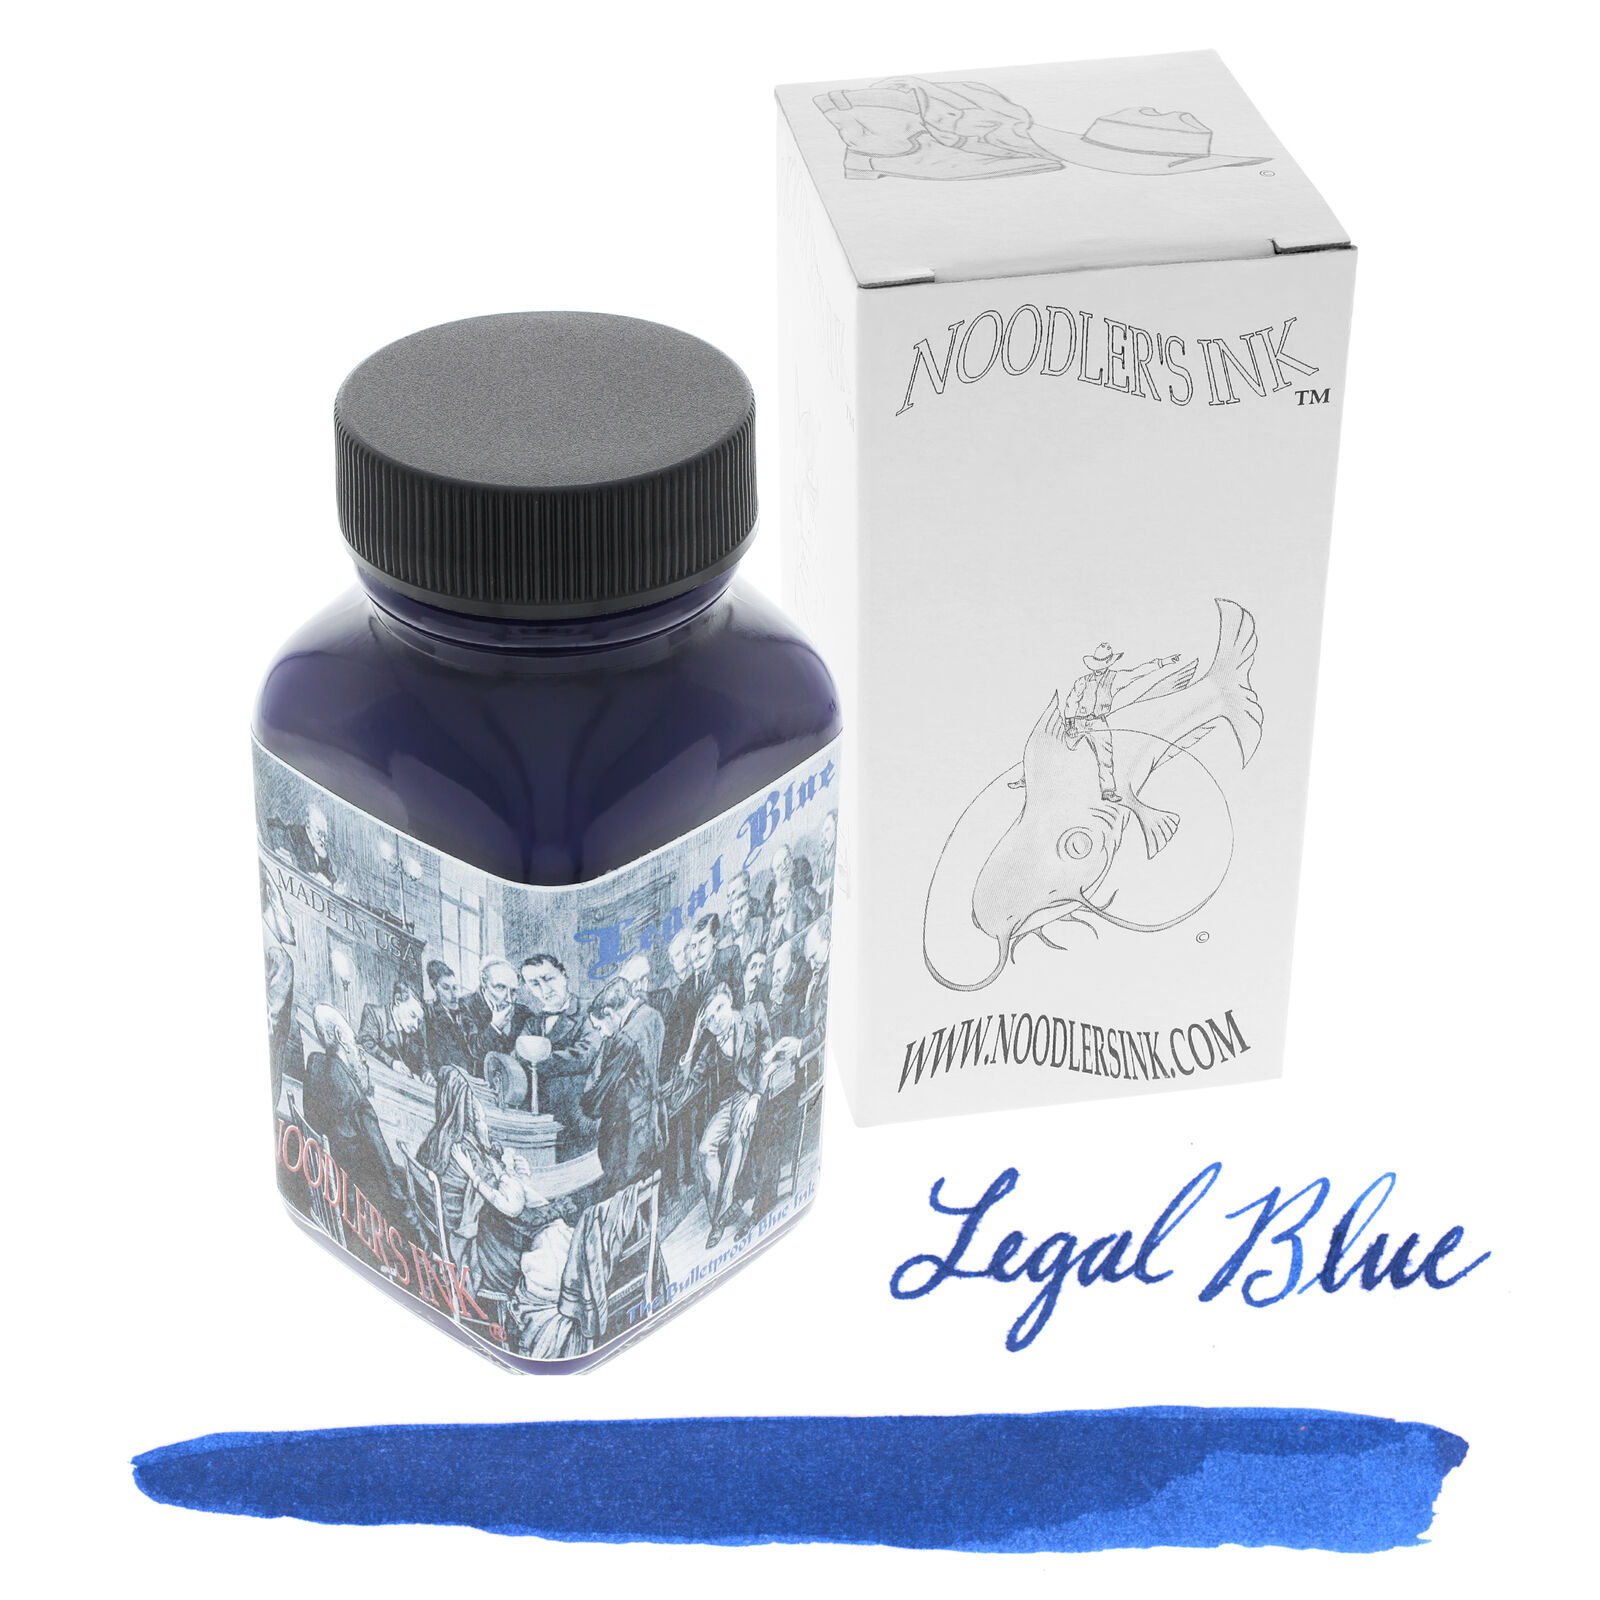 Noodler's Ink Legal Blue Bottled Fountain Pen Ink 3oz ND-19086